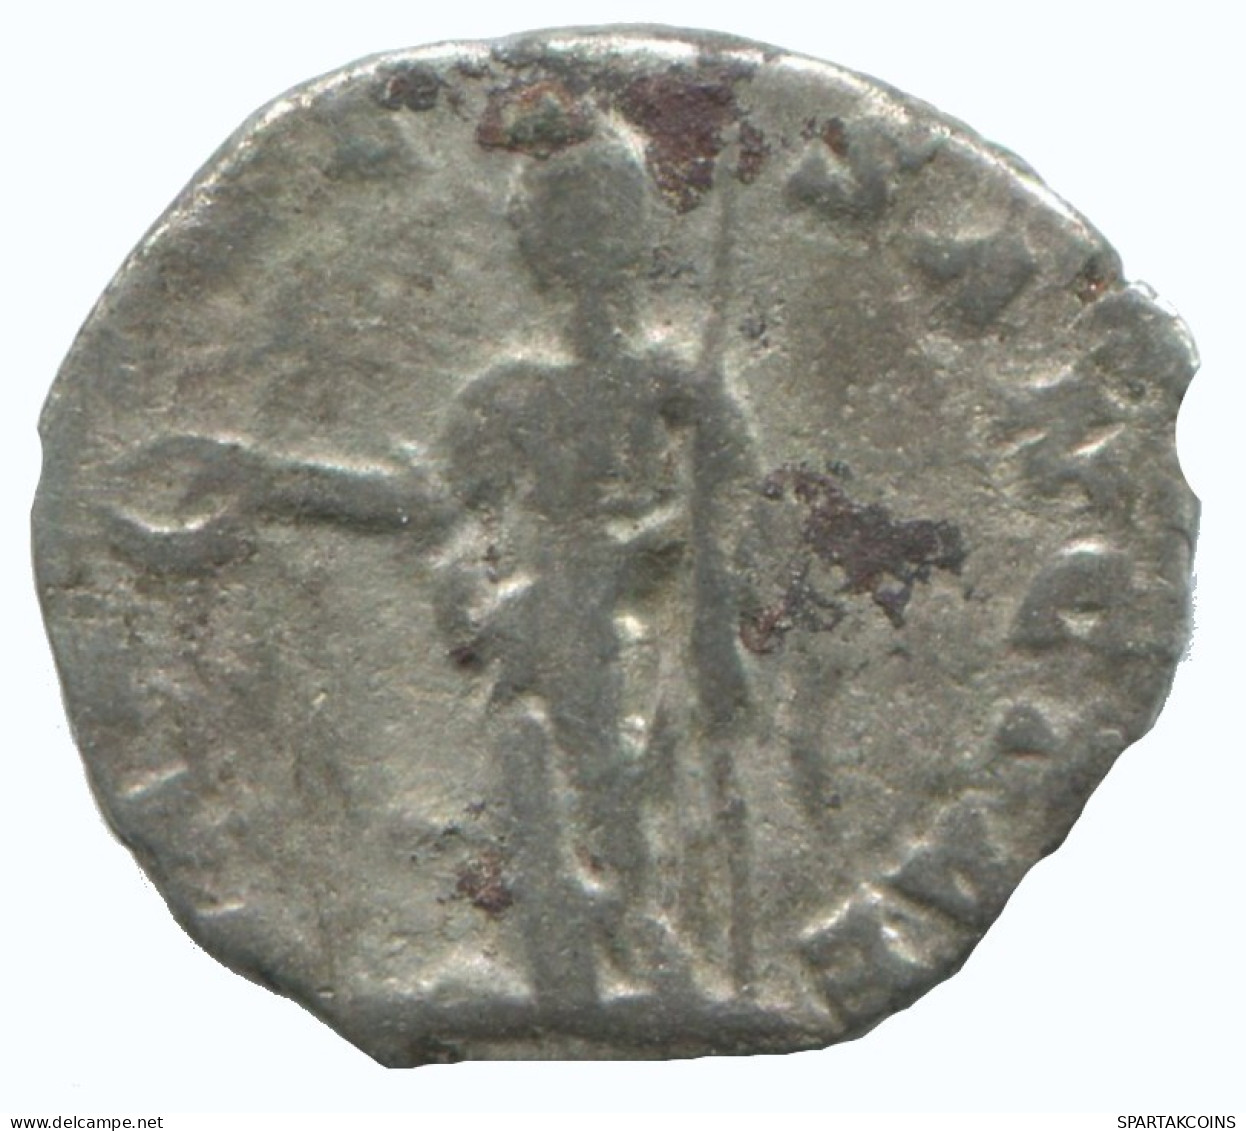 JULIA DOMNA SILVER DENARIUS ROMAIN ANTIQUE Pièce 2.9g/16mm #AA280.45.F.A - La Dinastía De Los Severos (193 / 235)